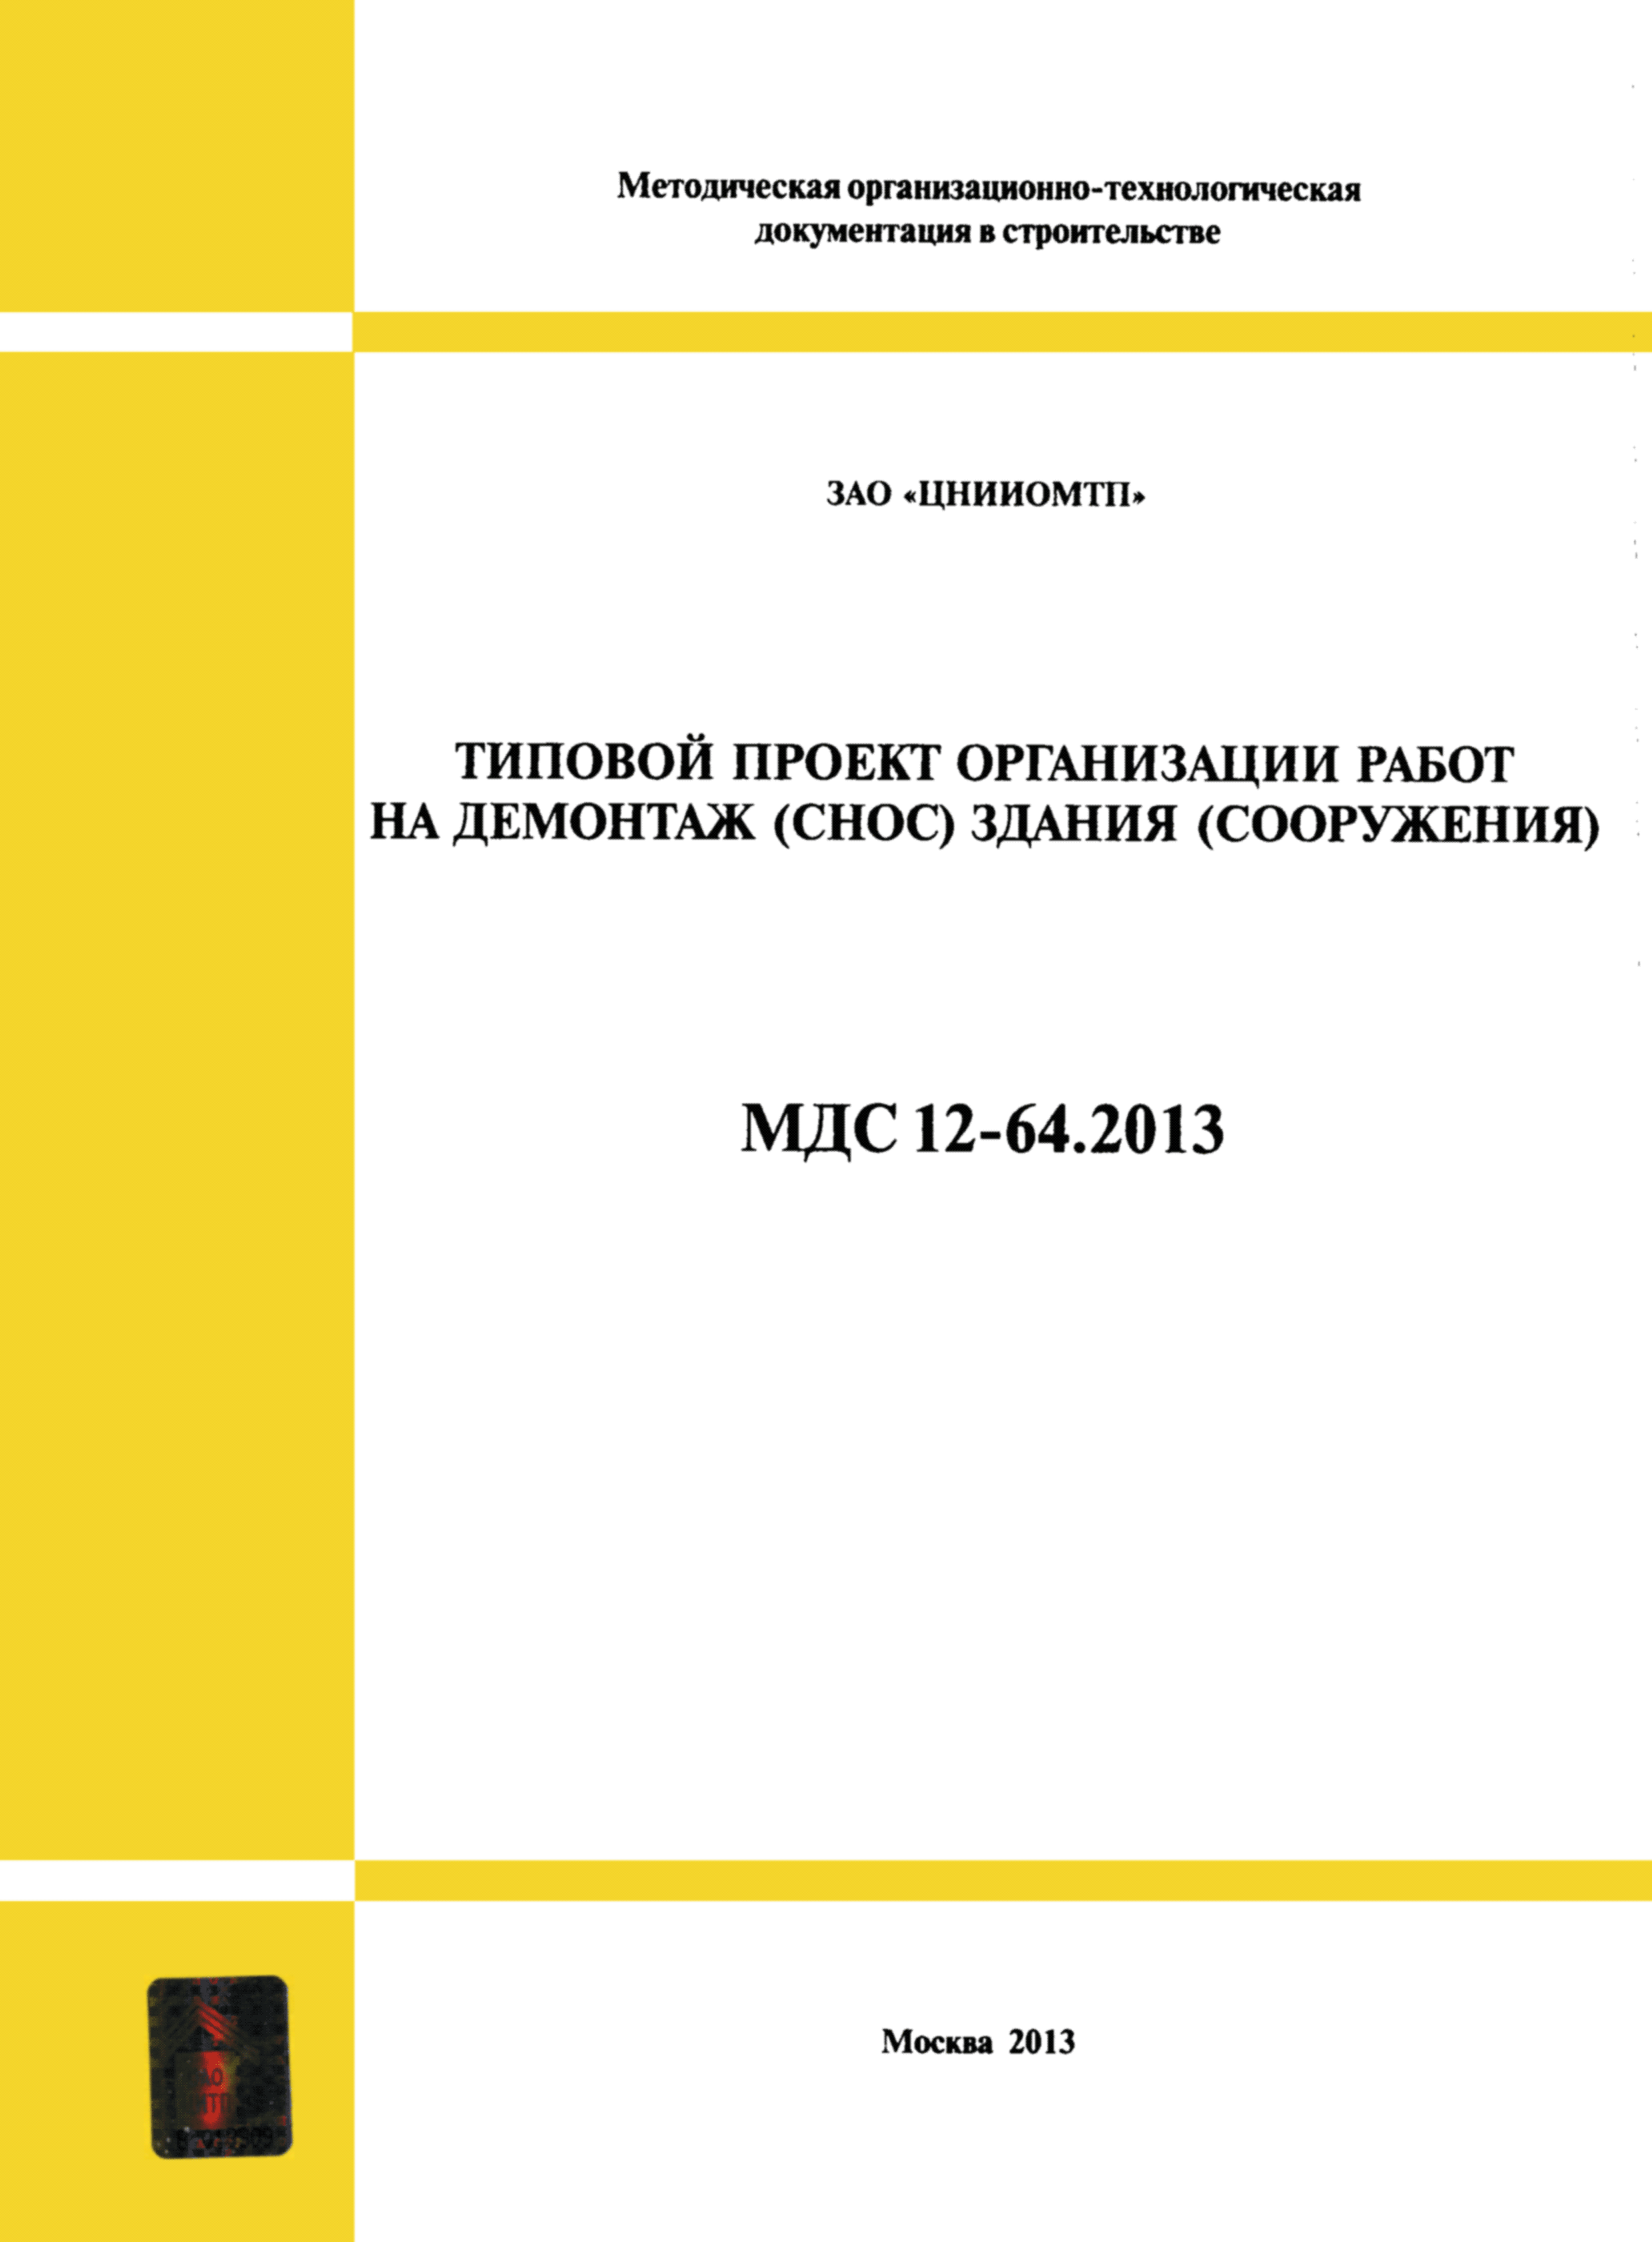 МДС 12-64.2013